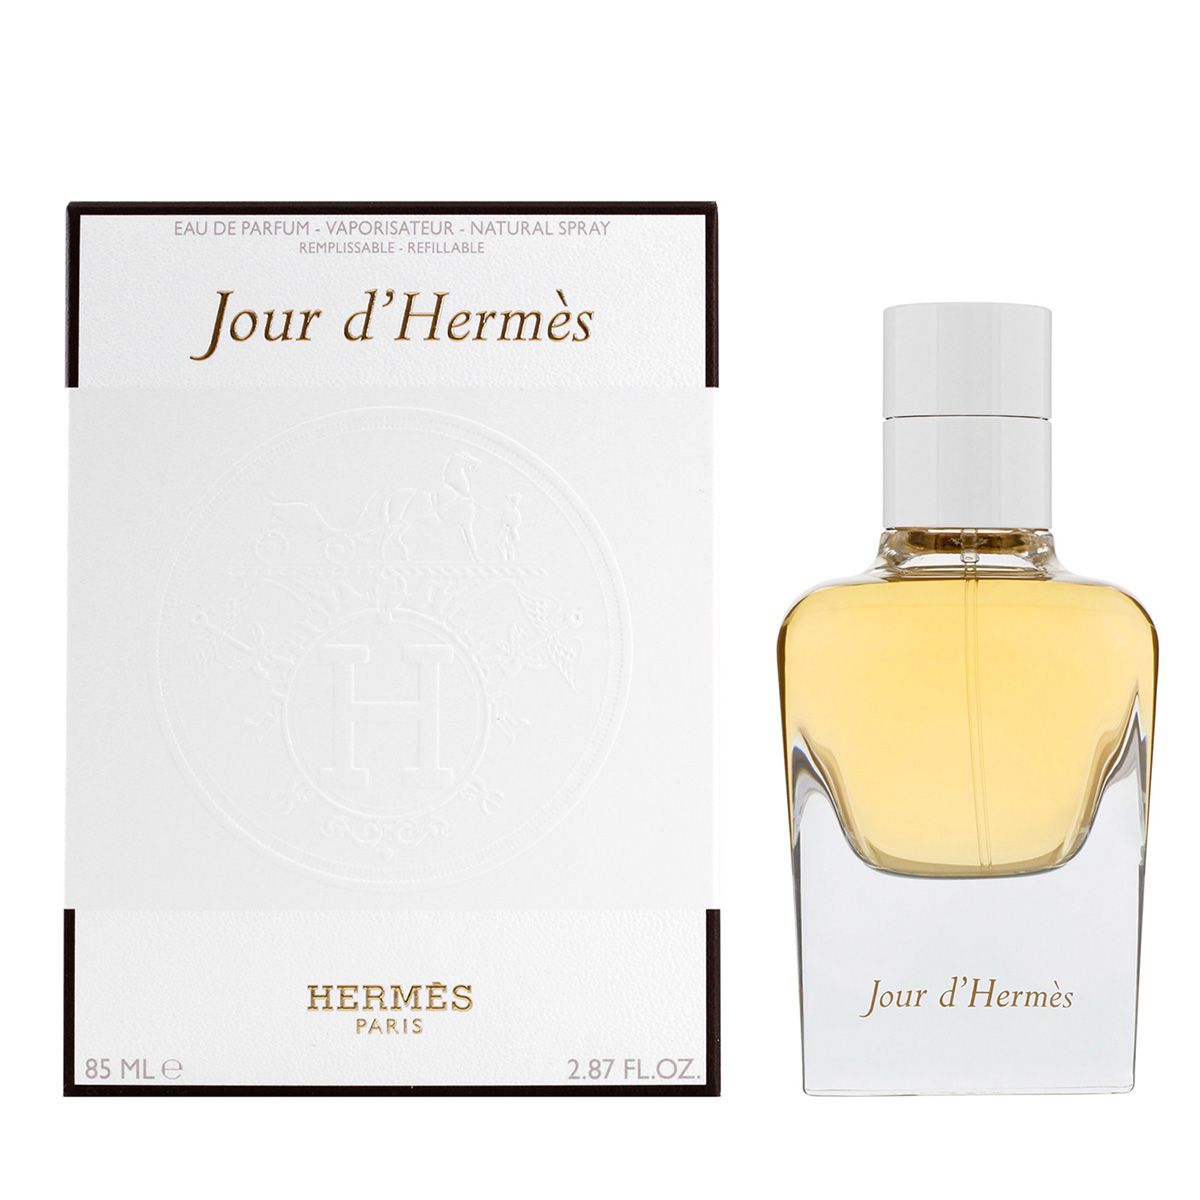  Hermes Jour d'Hermes 